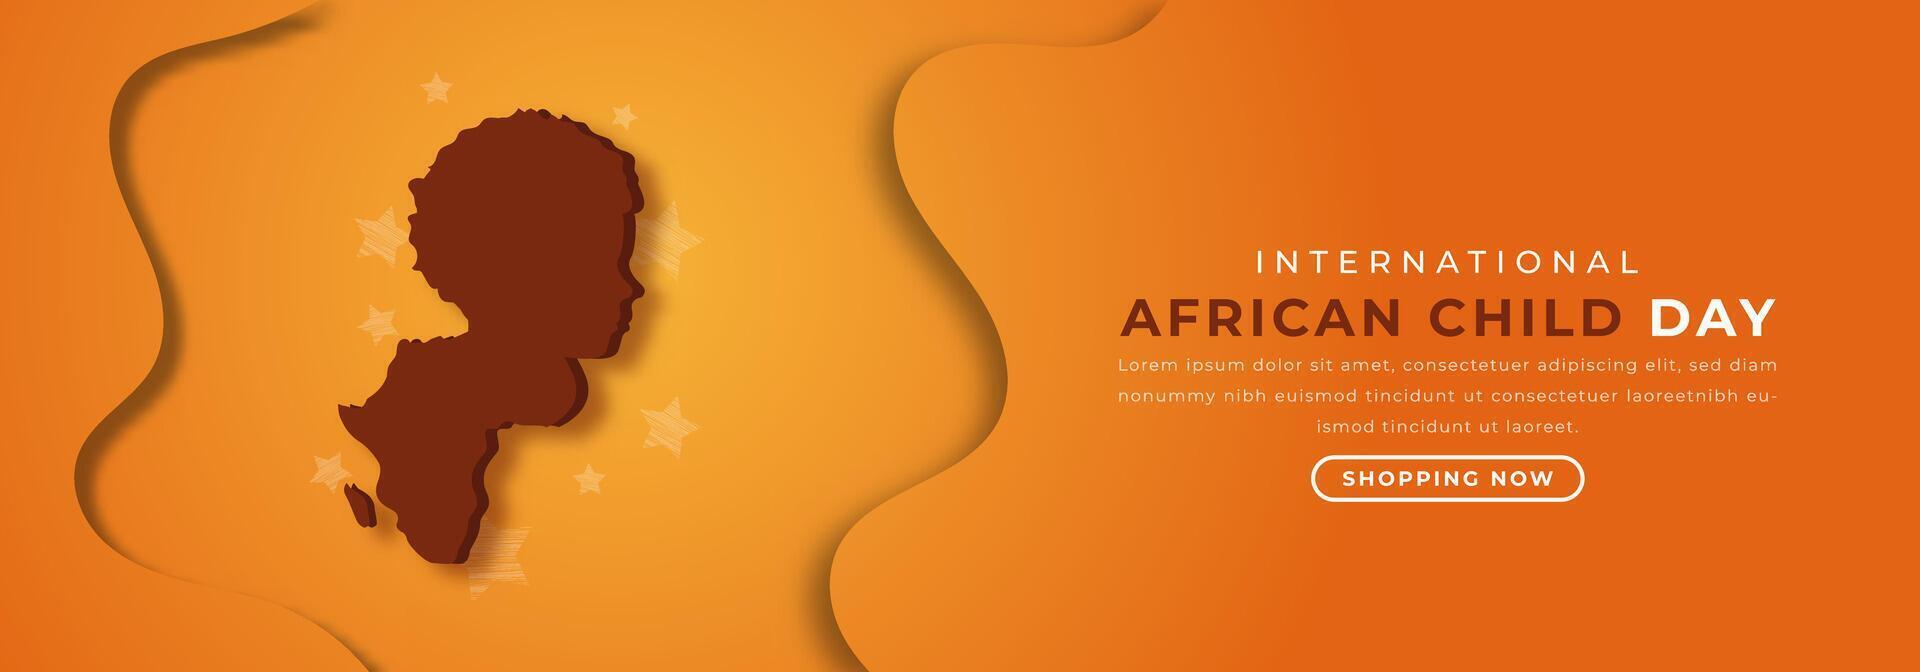 Internationale Afrikaanse kind dag papier besnoeiing stijl vector ontwerp illustratie voor achtergrond, poster, banier, reclame, groet kaart